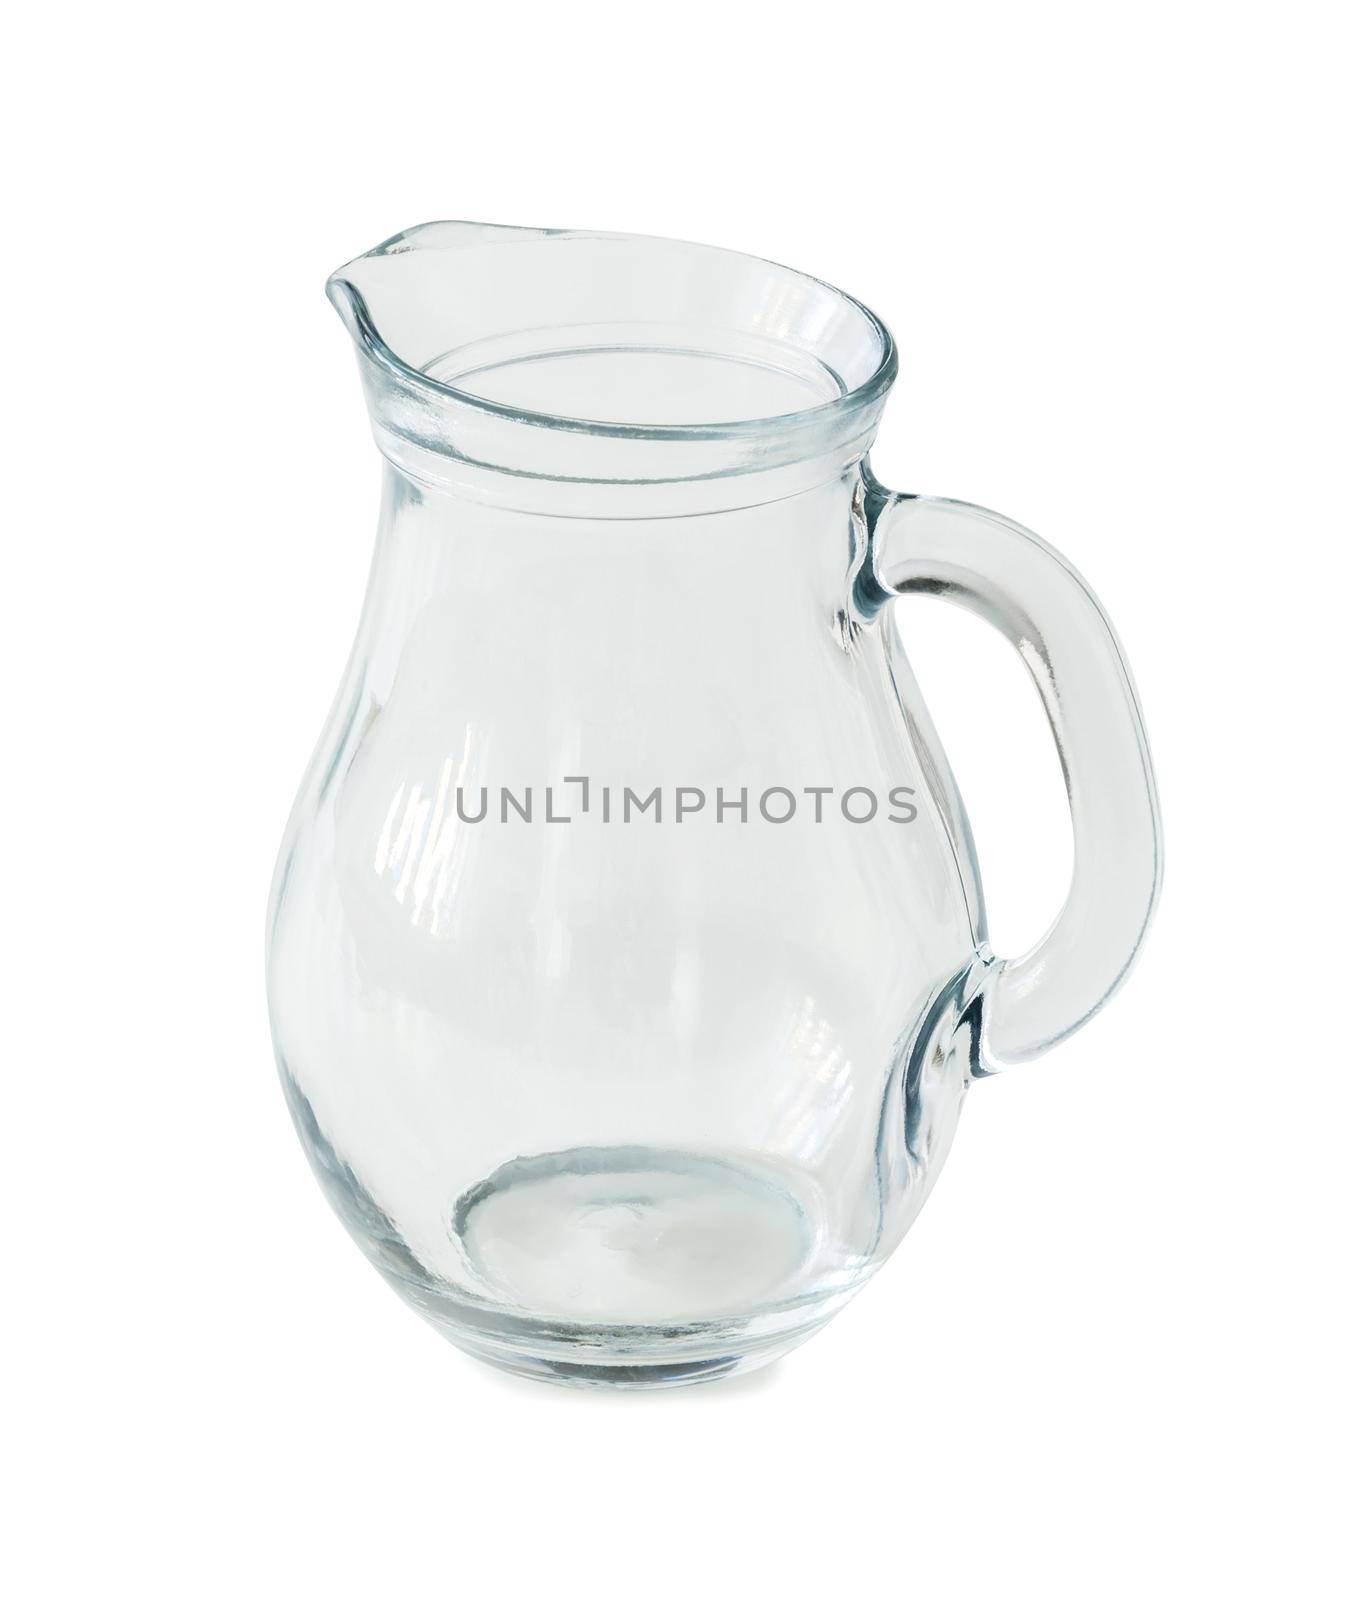 empty glass jug by tan4ikk1